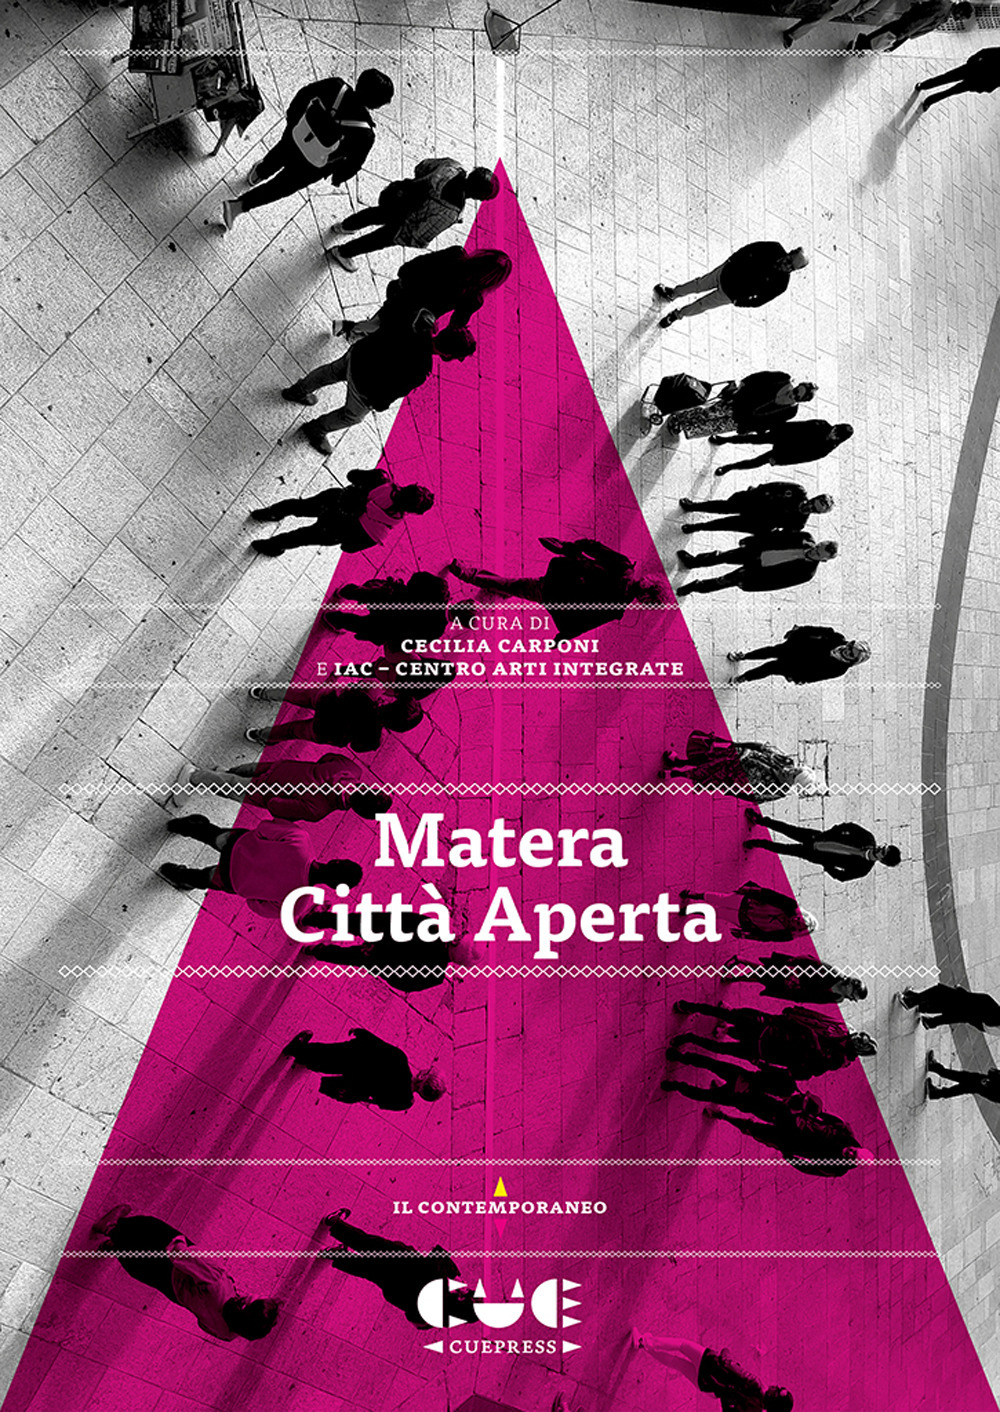 Libri Carponi Cecilia - Matera Citta Aperta NUOVO SIGILLATO, EDIZIONE DEL 08/06/2021 SUBITO DISPONIBILE